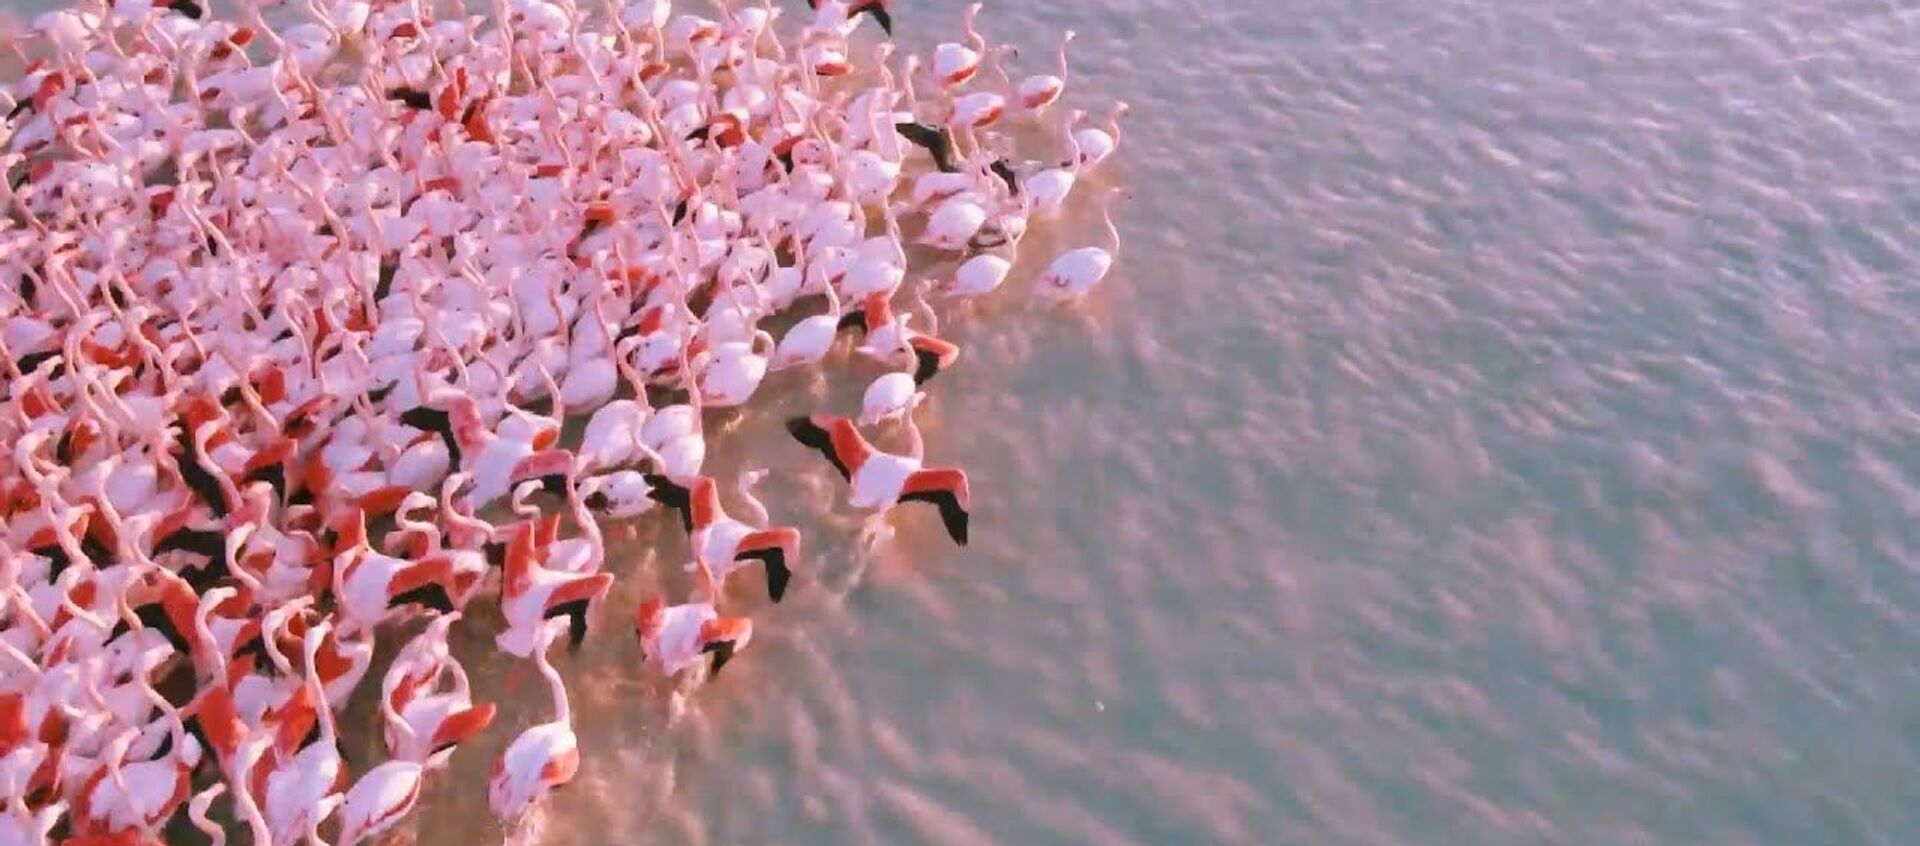 По пути на юг: сотни розовых фламинго остановились на озере в Казахстане - Sputnik Узбекистан, 1920, 17.11.2020